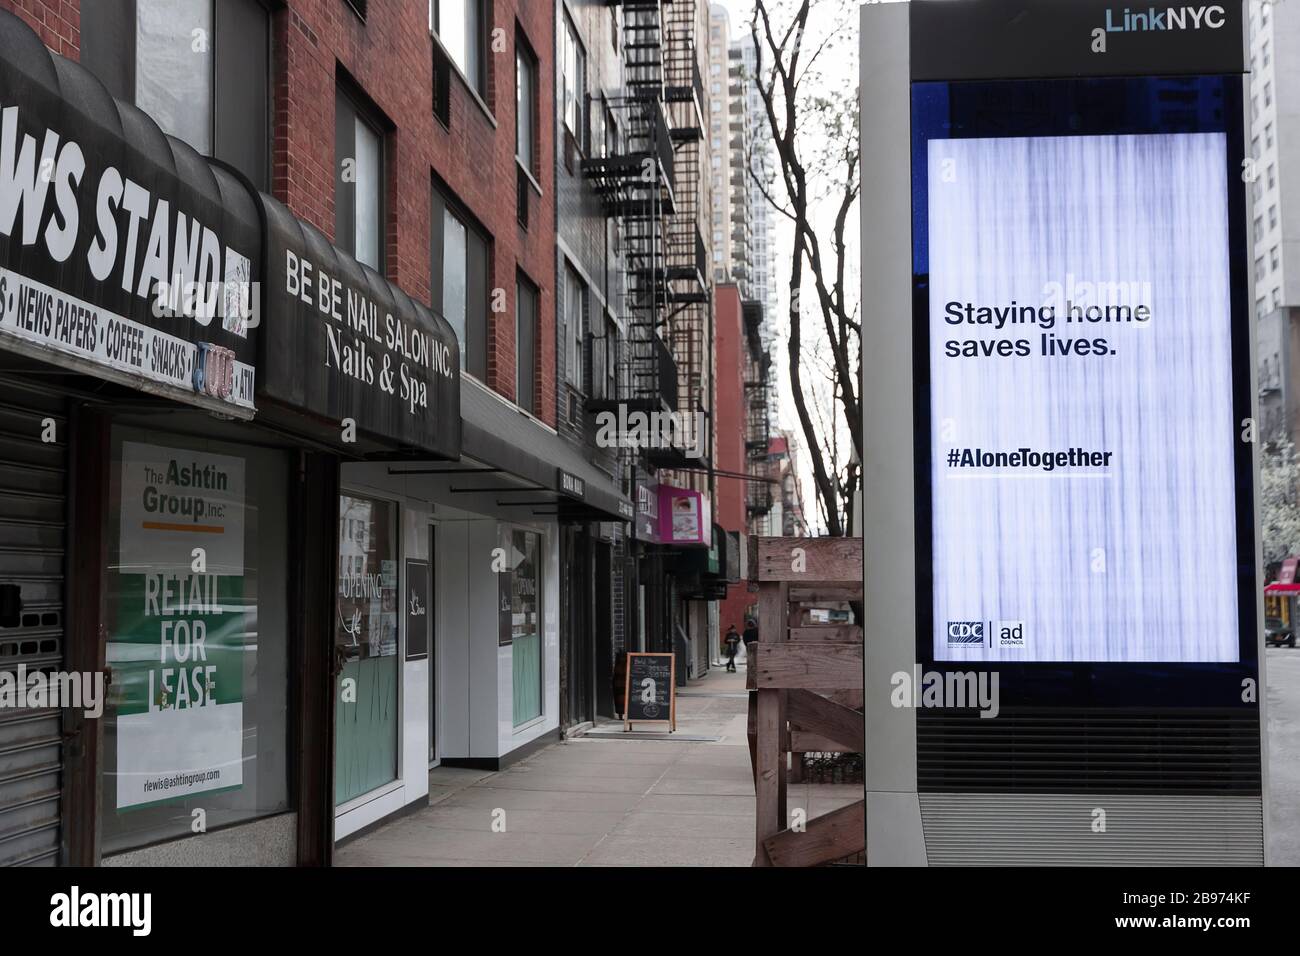 LinkNYC digital kiosk segno sul marciapiede che mostra Covid-19 (coronavirus) quarantena suggerimenti e consigli per i newyorkesi. Foto Stock